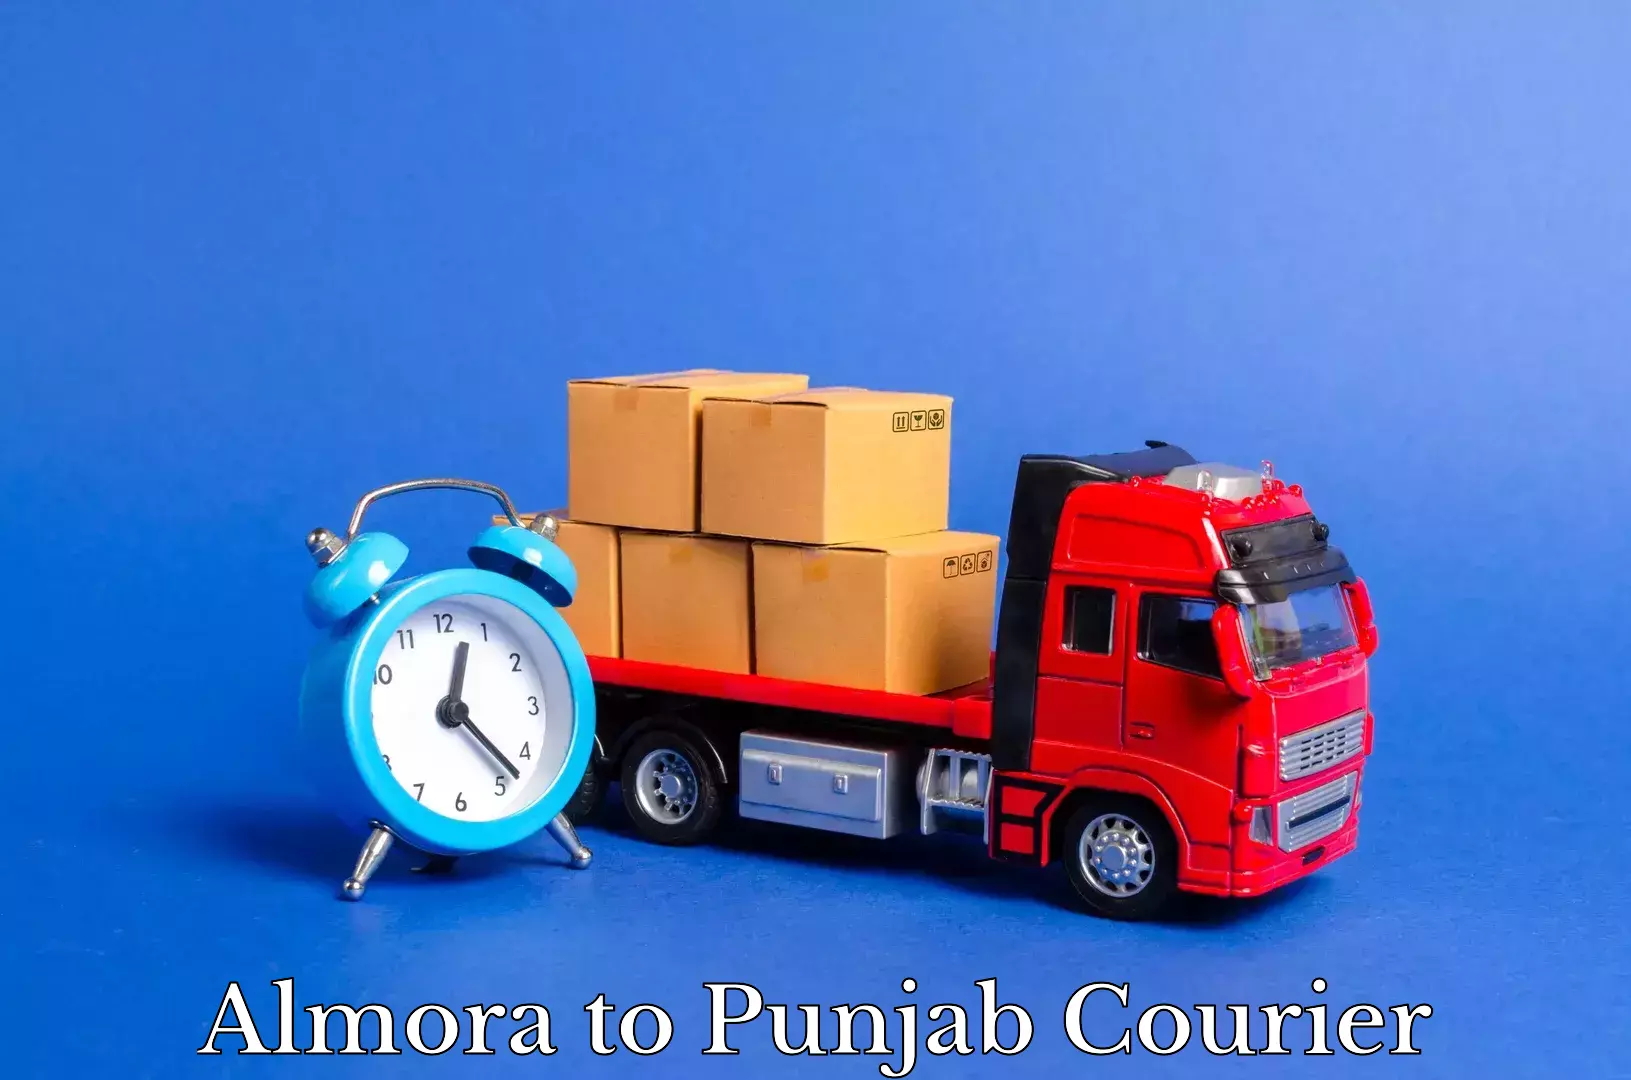 Household transport experts Almora to Jalandhar